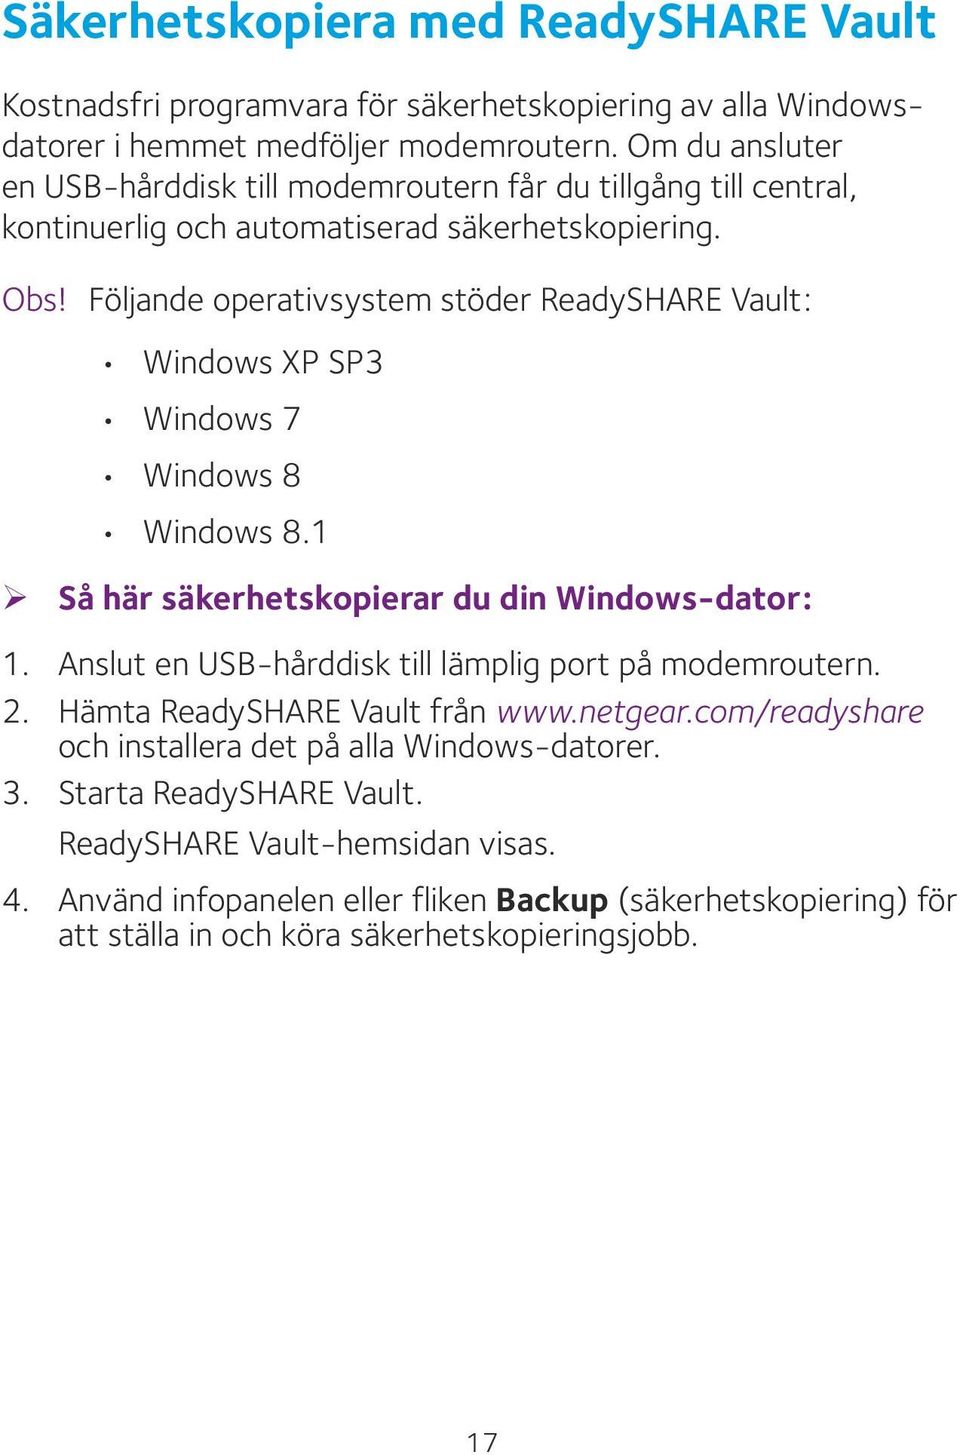 Följande operativsystem stöder ReadySHARE Vault: Windows XP SP3 Windows 7 Windows 8 Windows 8.1 ¾ Så här säkerhetskopierar du din Windows-dator: 1.